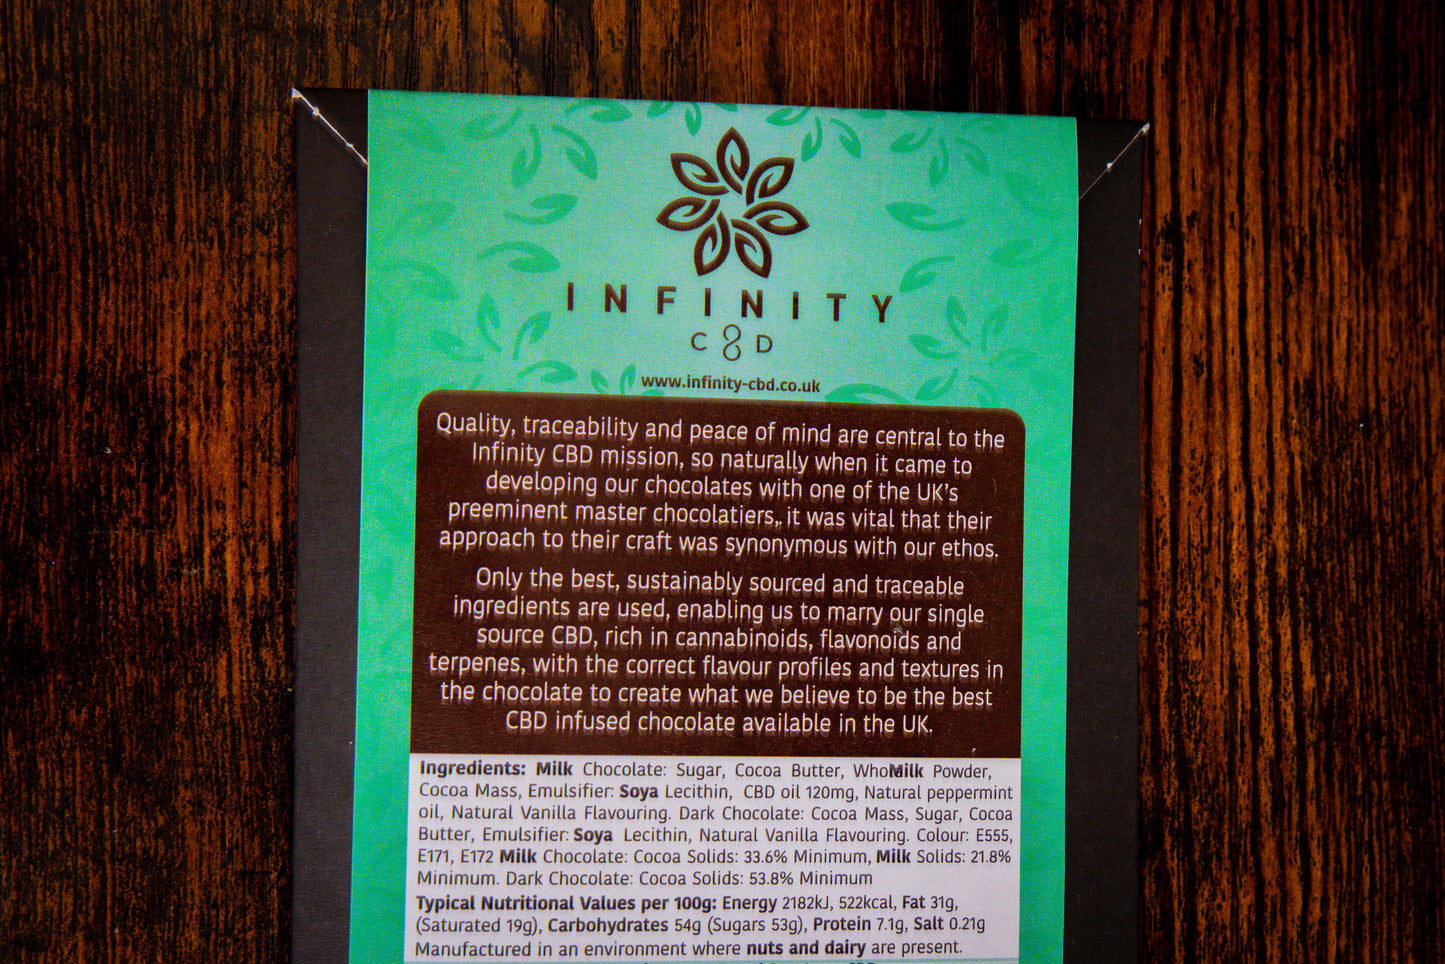 Mint CBD Chocolate ingredients by Infinity CBD